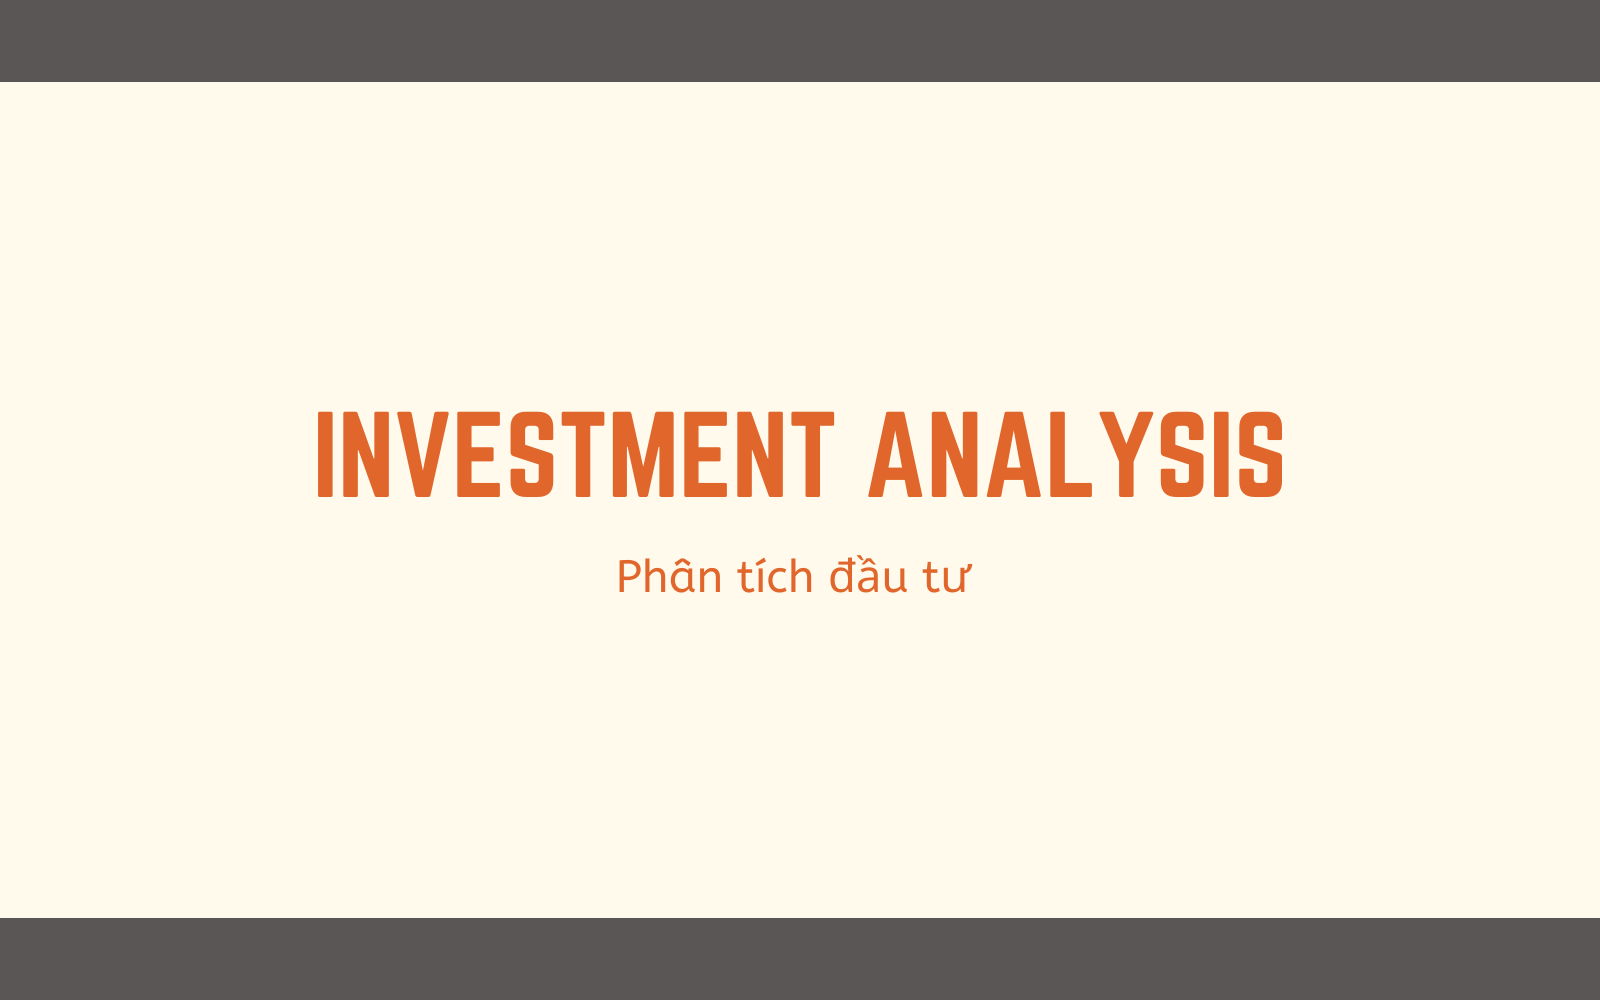 Phân tích đầu tư bao gồm sự xem xét chi tiết về sức khỏe tài chính, triển vọng kinh doanh, và yếu tố thị trường liên quan